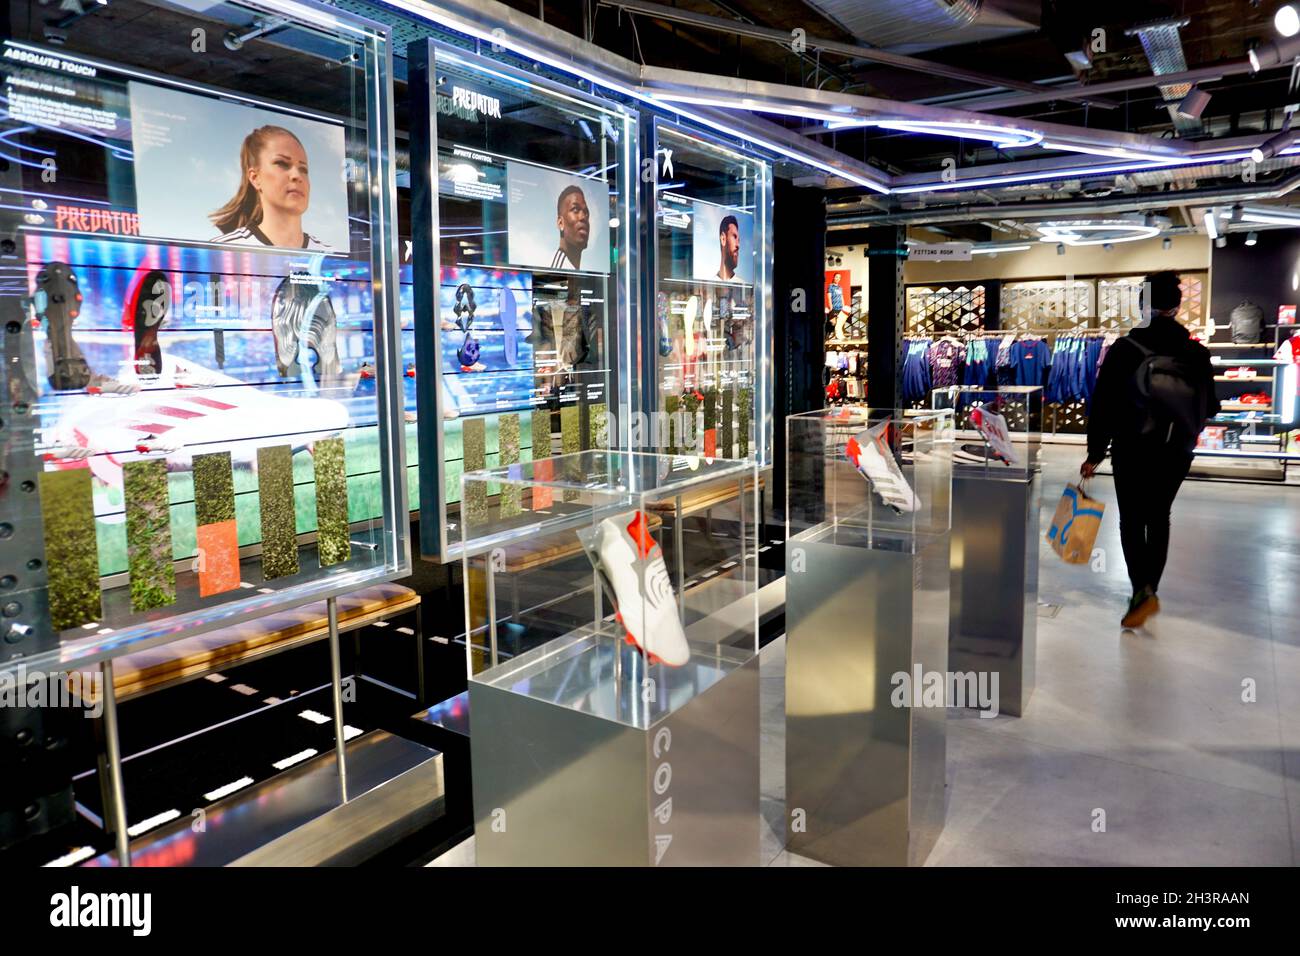 Interieur des Adidas-Stores in der Oxford Street, London, Großbritannien  Stockfotografie - Alamy